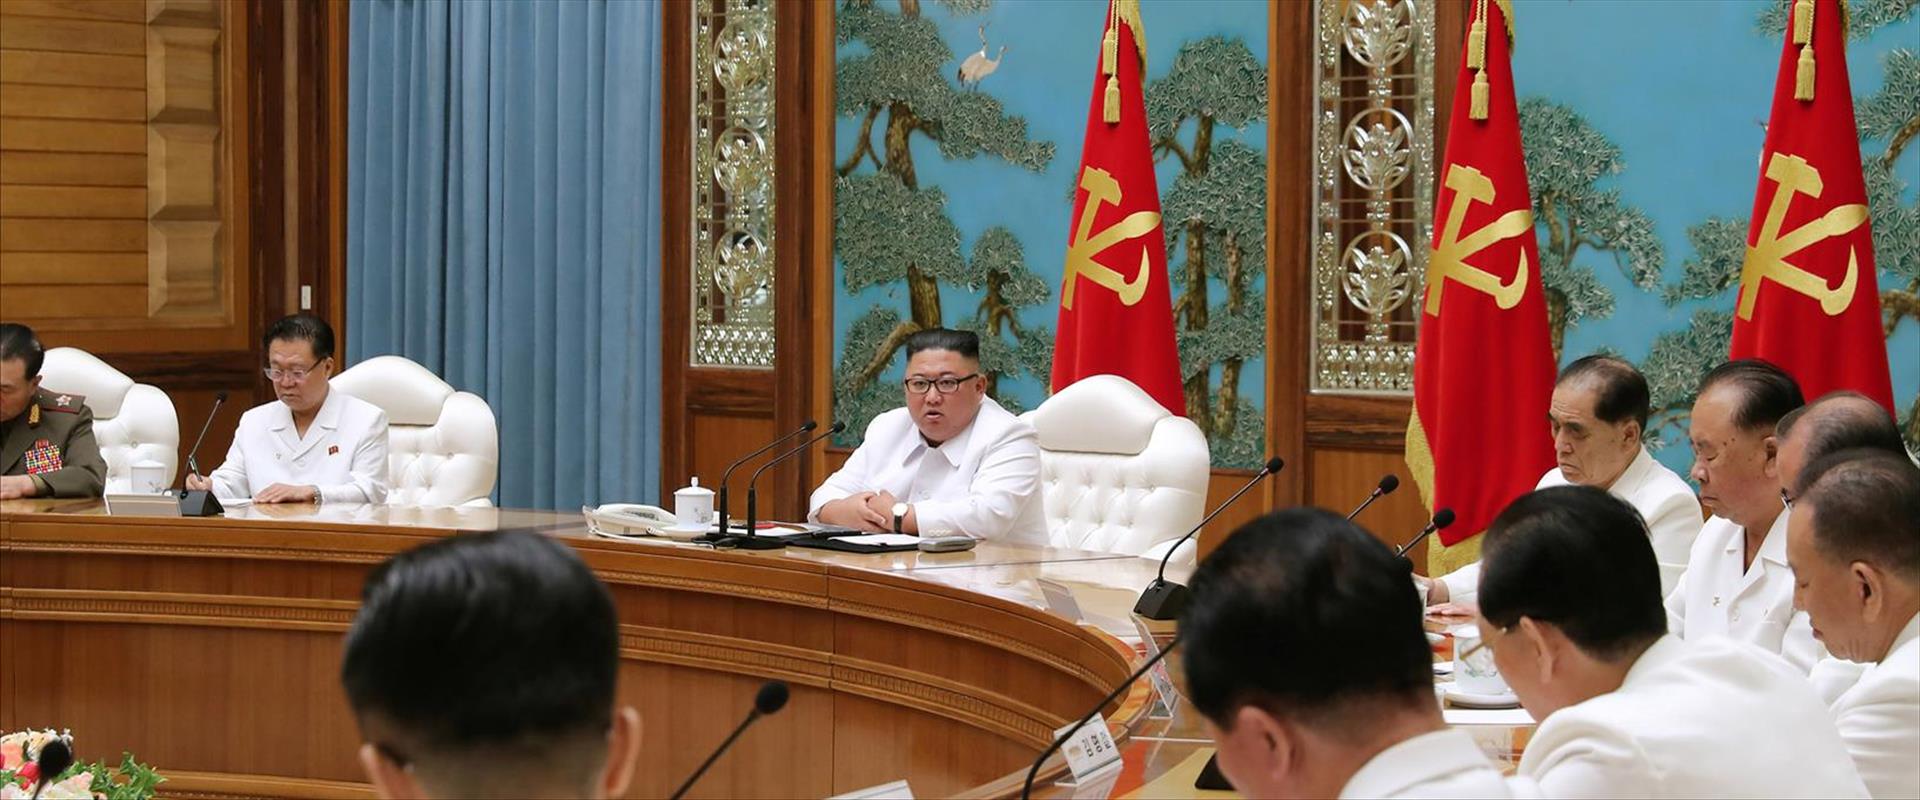 מנהיג צפון קוריאה קים ג'ונג און בישיבת החירום, 25.